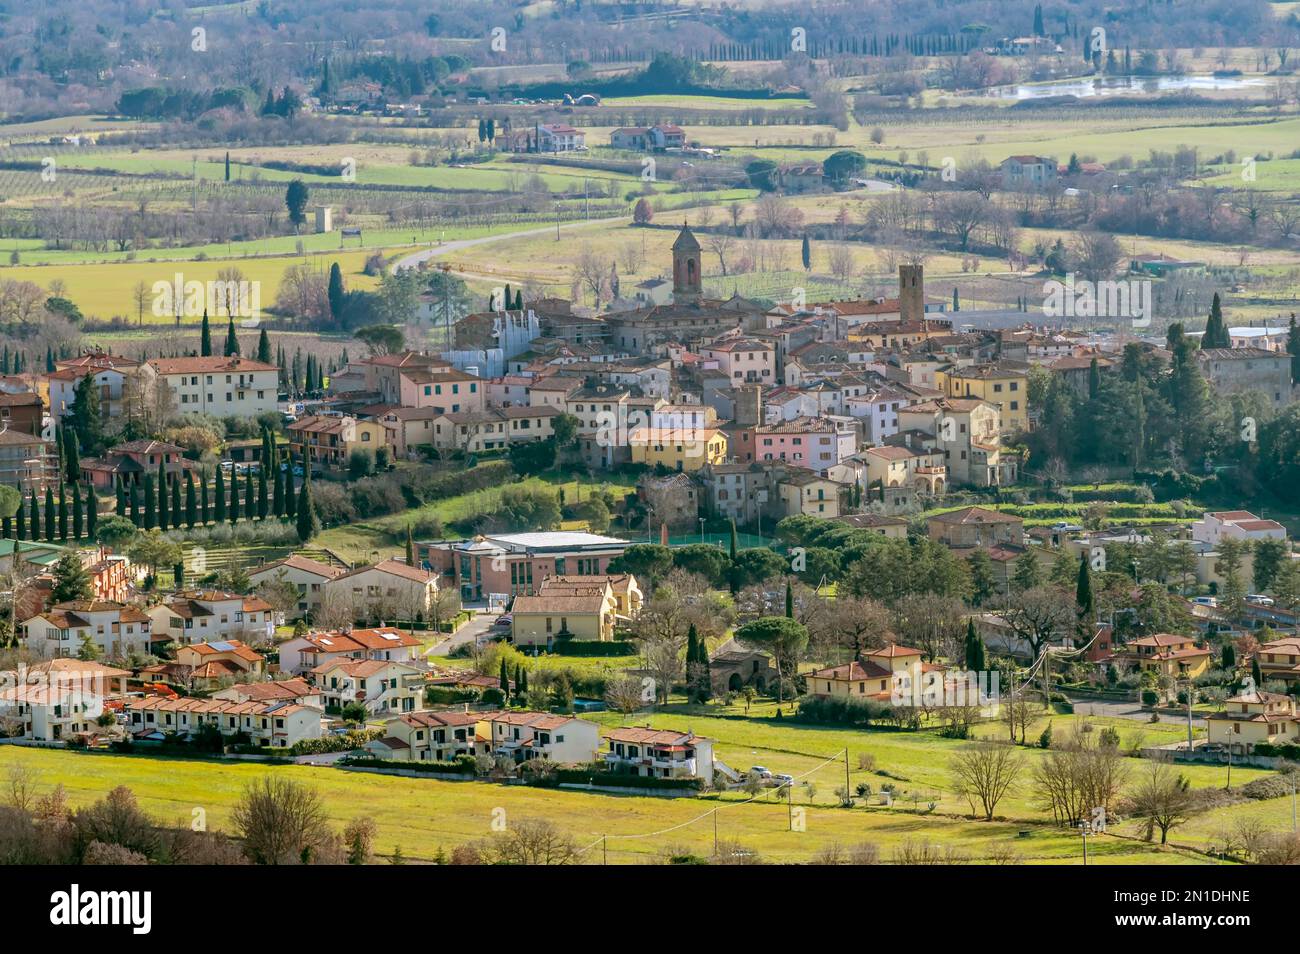 Veduta aerea panoramica del borgo medievale di Castiglion Fibocchi, Arezzo, Italia e dintorni Foto Stock